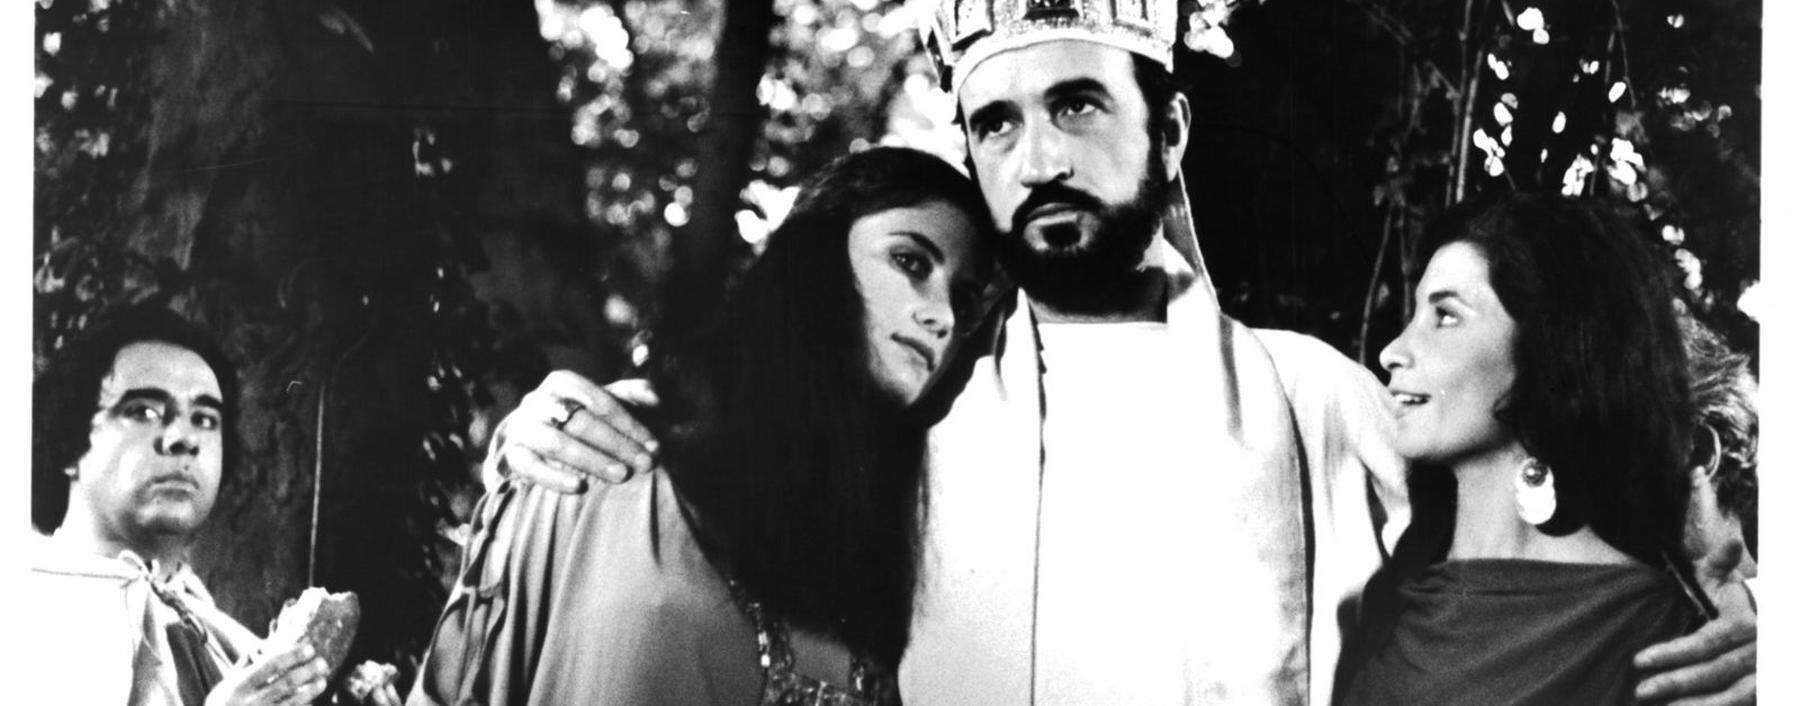 Lasst freie Frauen um mich sein! Jean-Claude Carrière als Priscillian in „Die Milchstraße“, einem surrealistischen Film von Luis Buñuel aus dem Jahr 1969. 